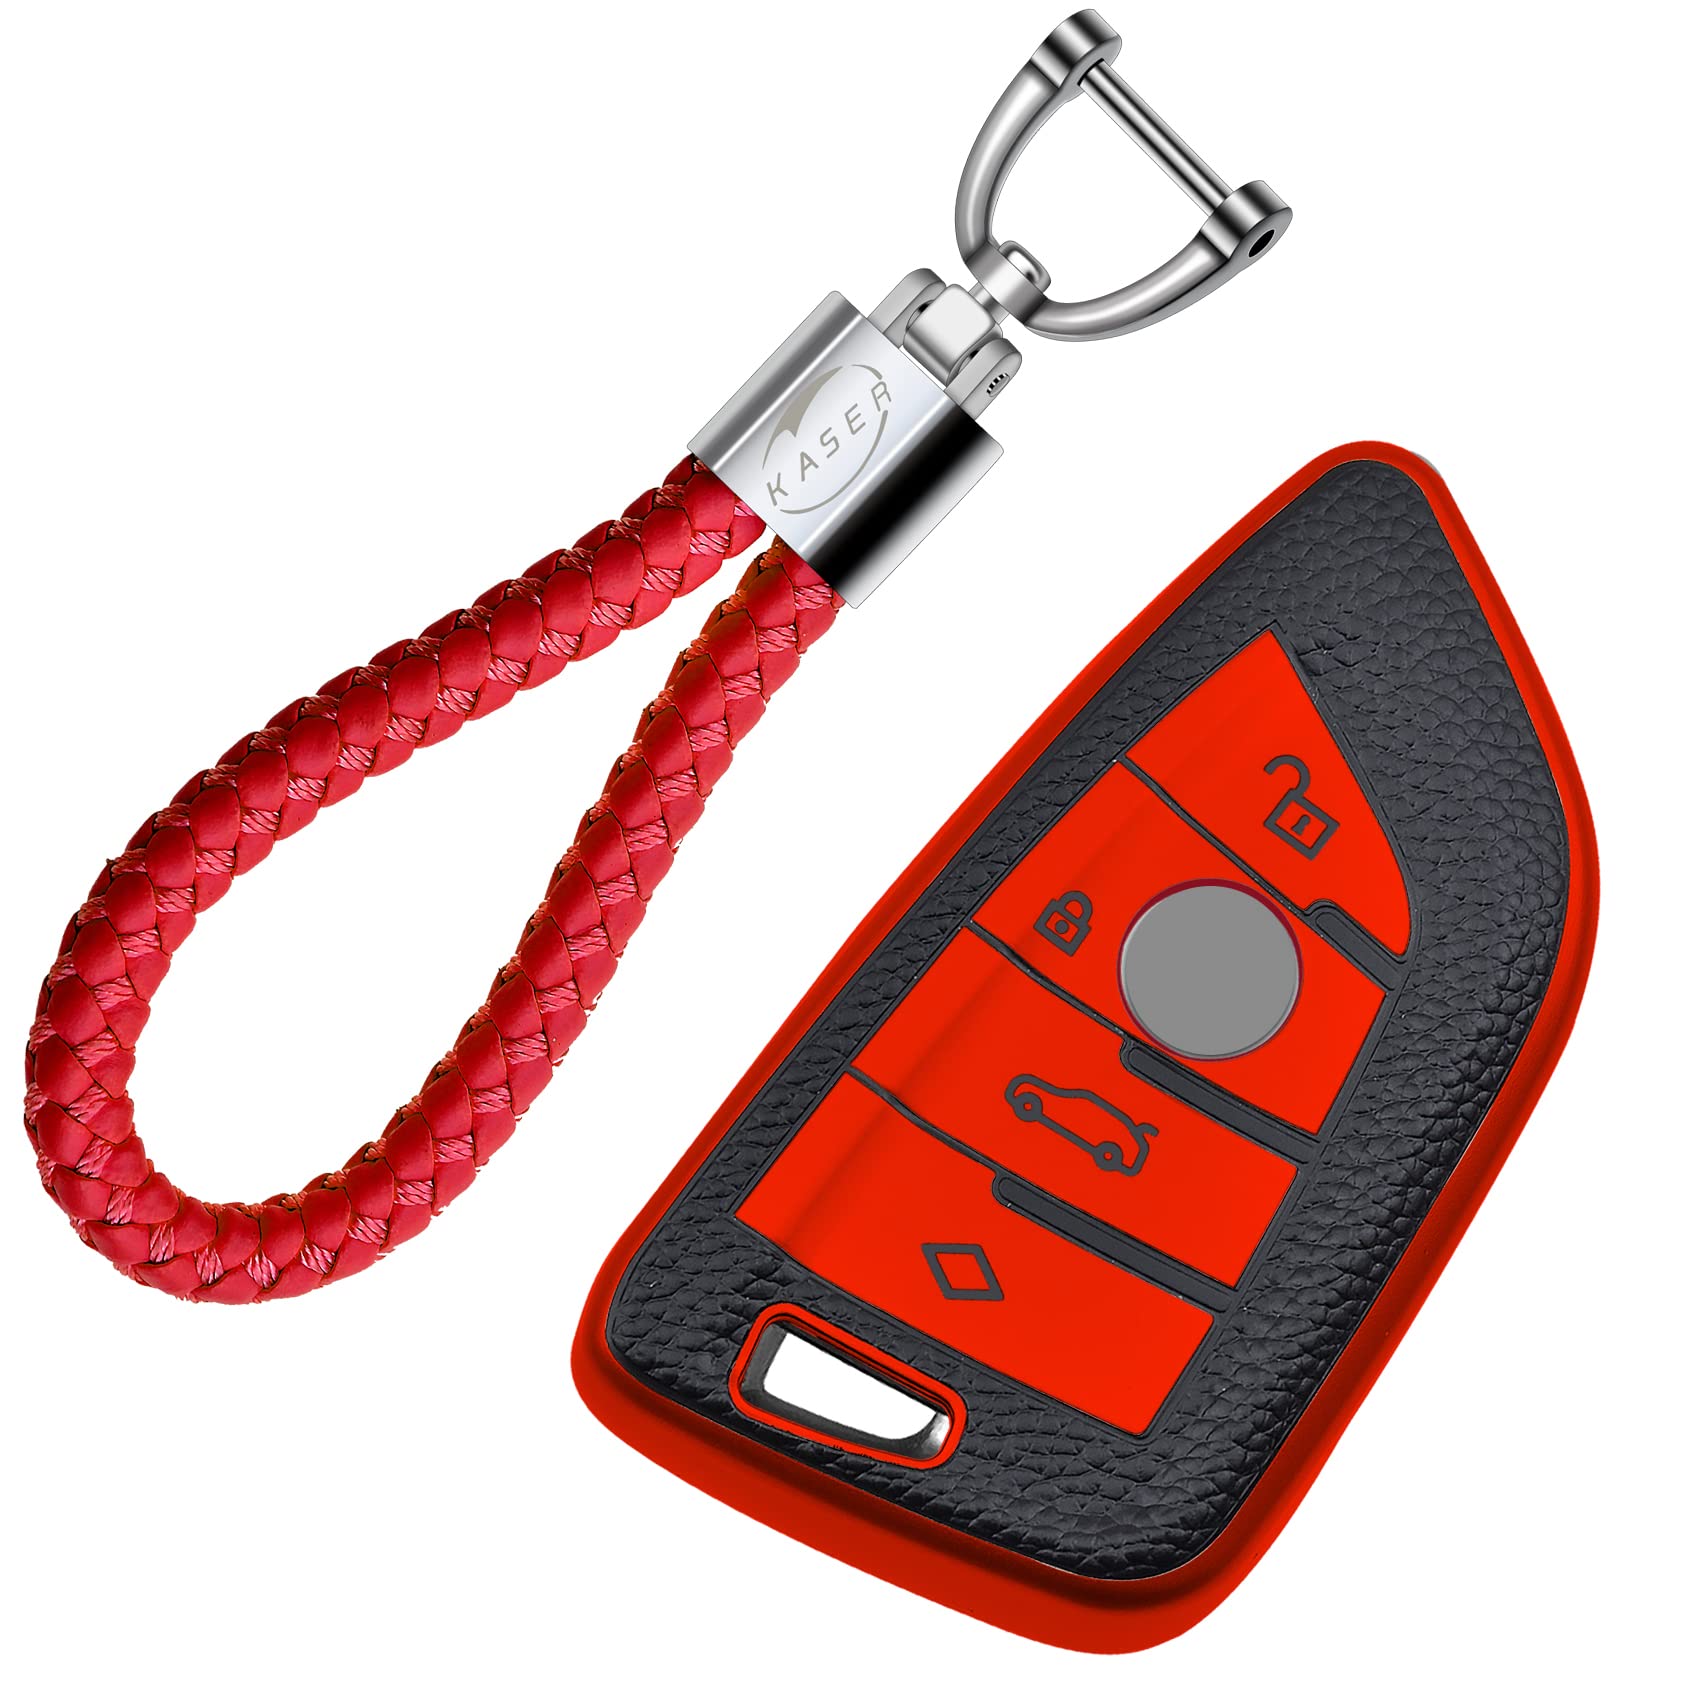 KASER Autoschlüssel Cover TPU Hülle kompatible für BMW Serie 1 3 5 7 X1 X3 X4 X5 X6 Schlüsselanhänger Abdeckung Silikon Schutzhülle Ledereffekt (Rot) von Kaser